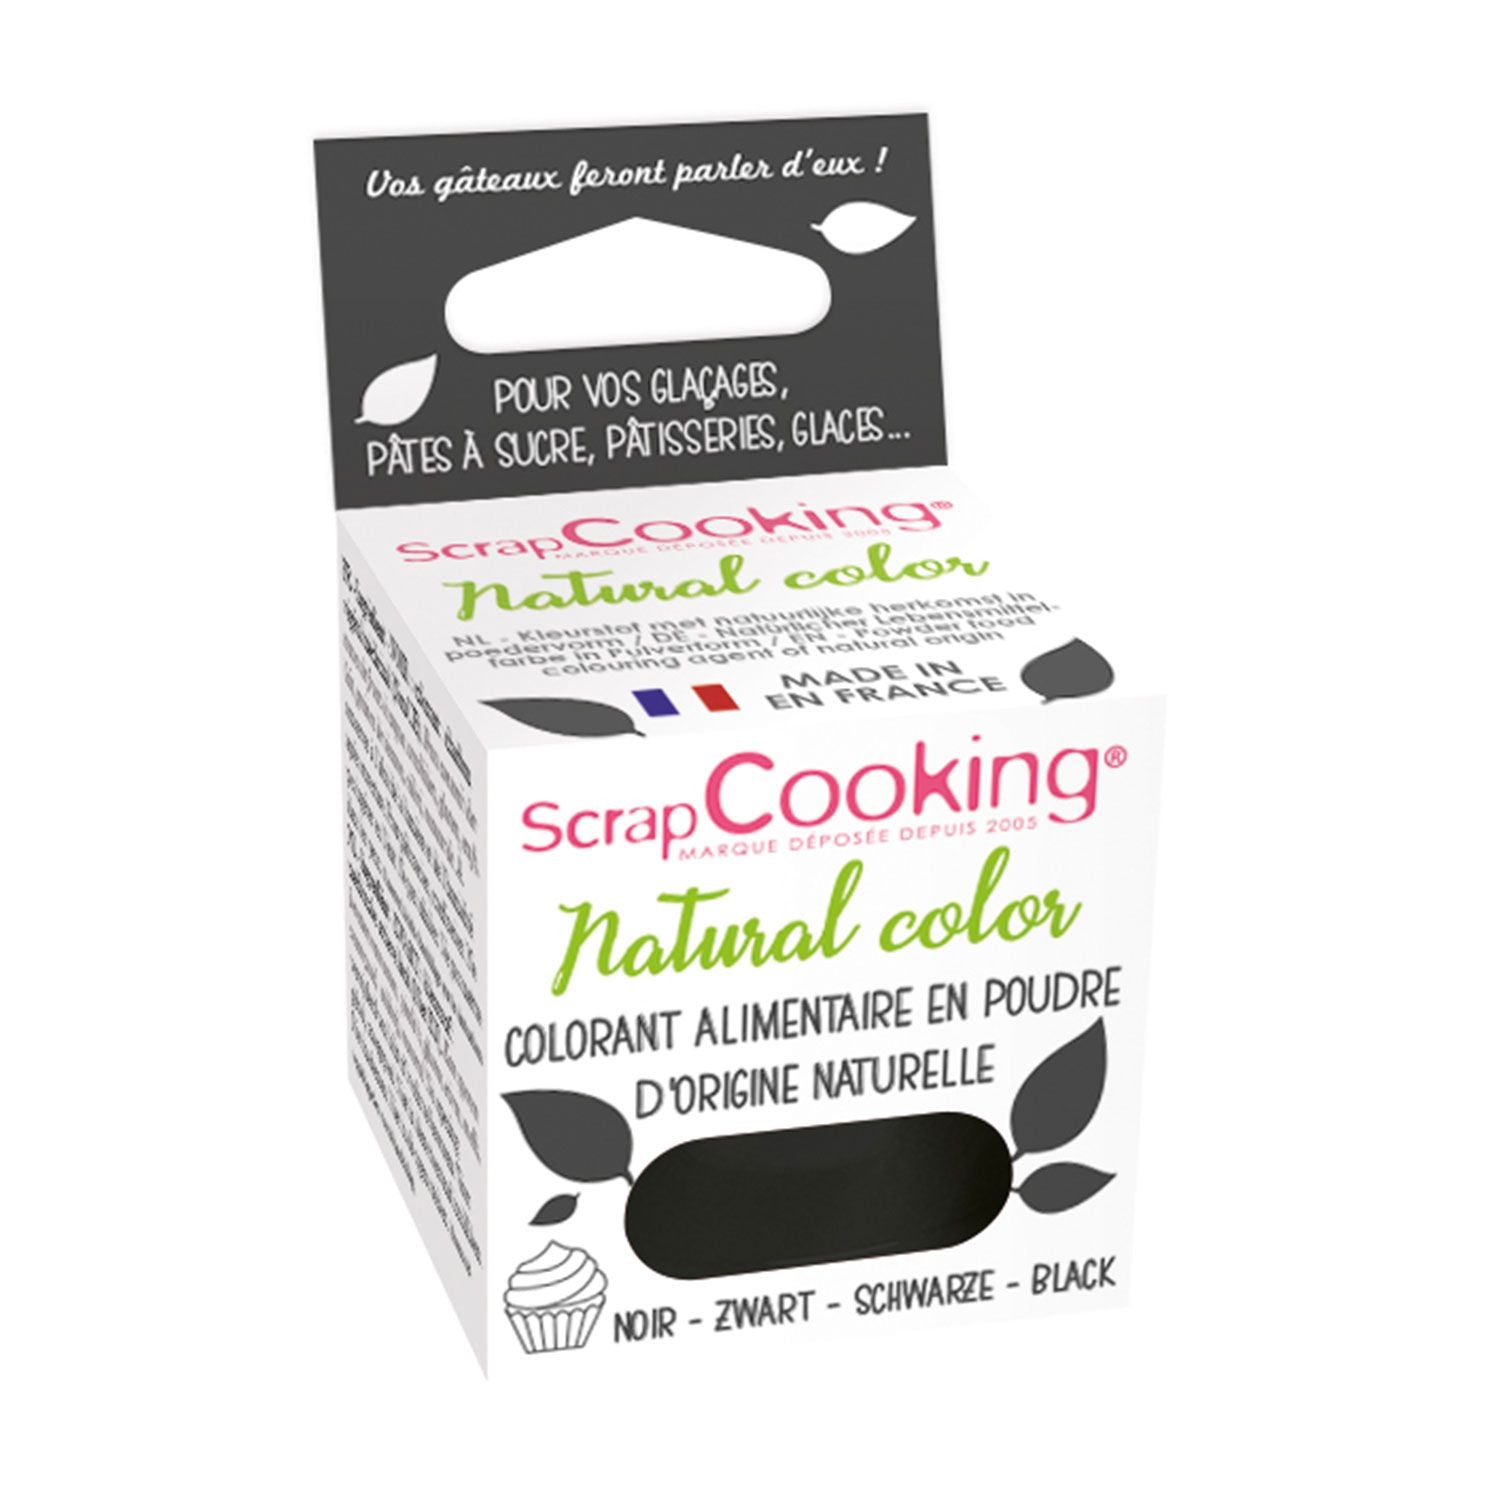 Colorant alimentaire (naturel) Jaune - Scrapcooking référence 4202